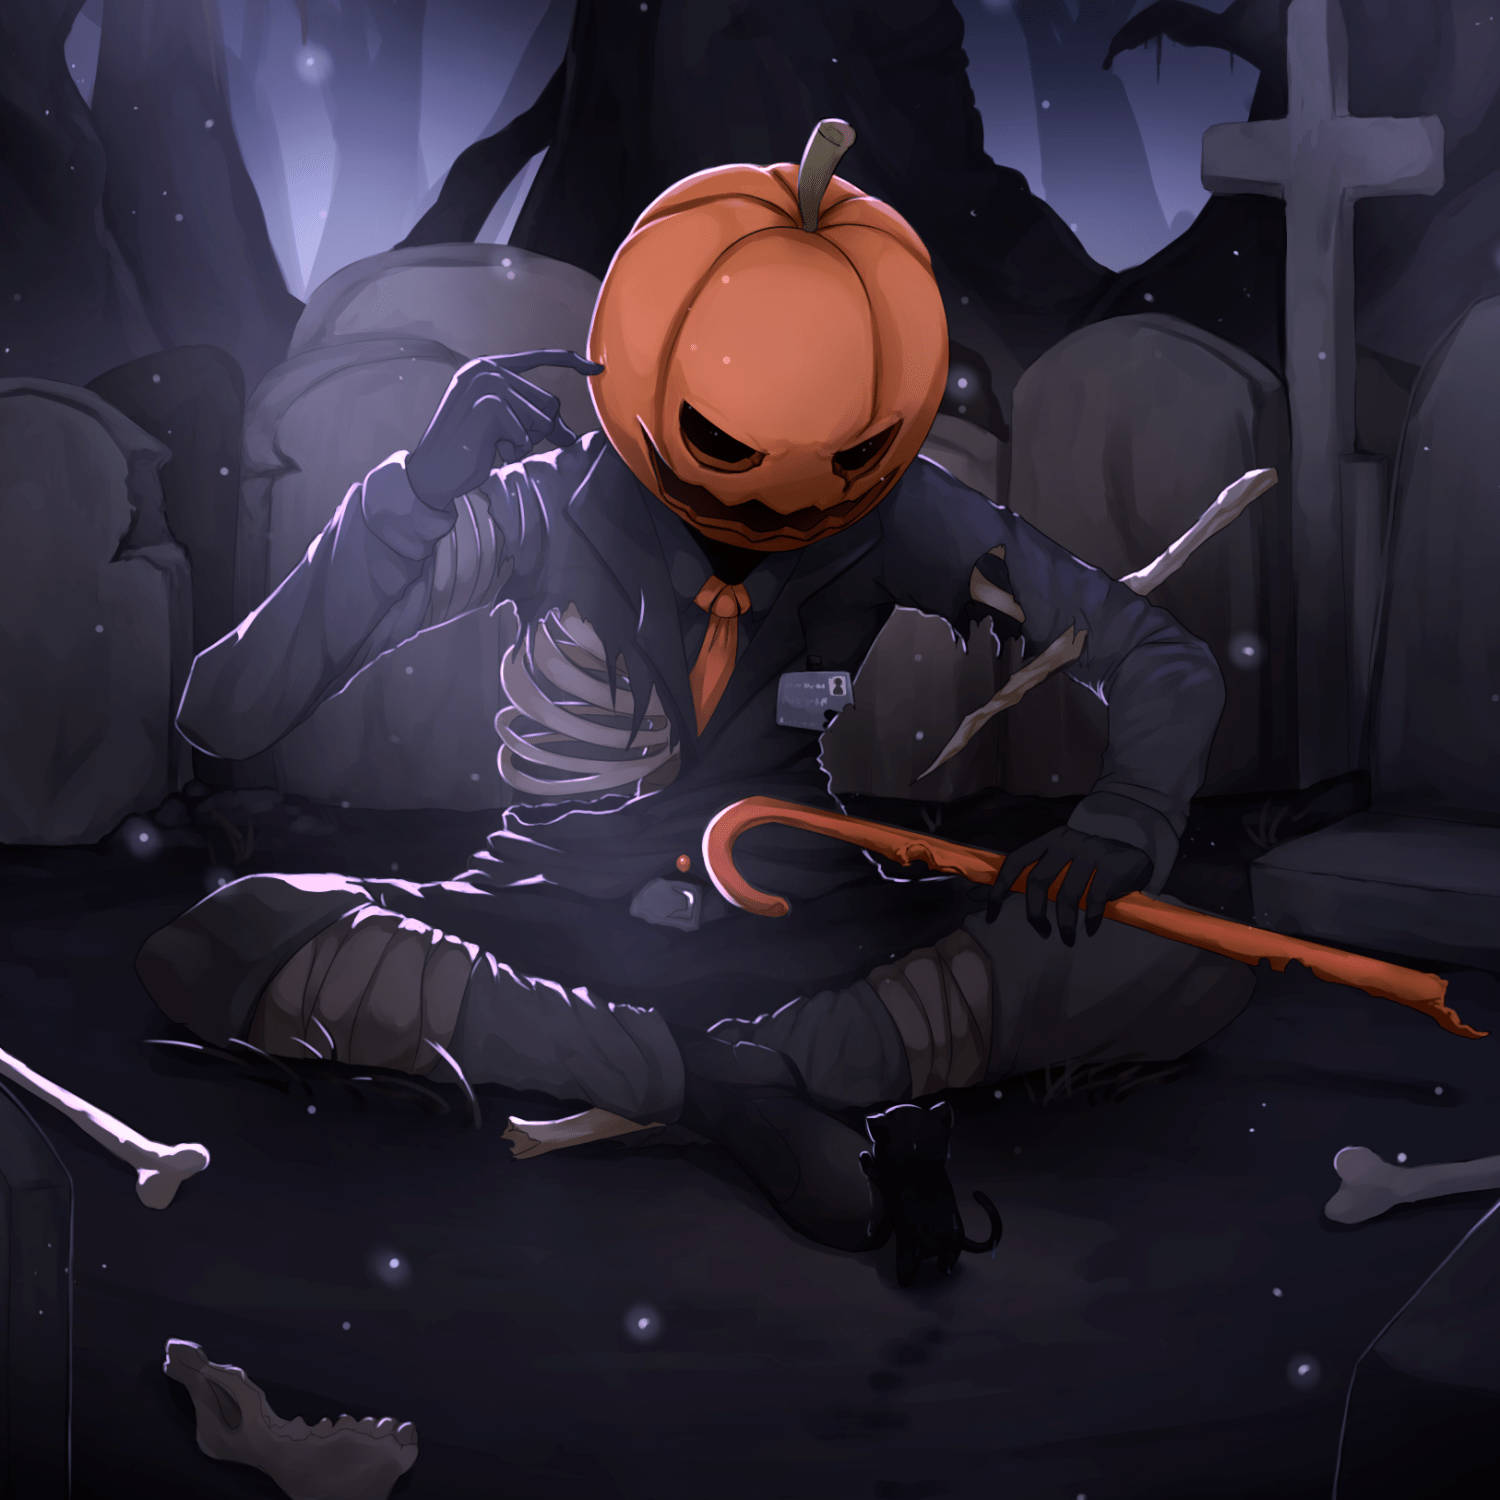 Jacko'-lantern Herido Pfp De Halloween. Fondo de pantalla